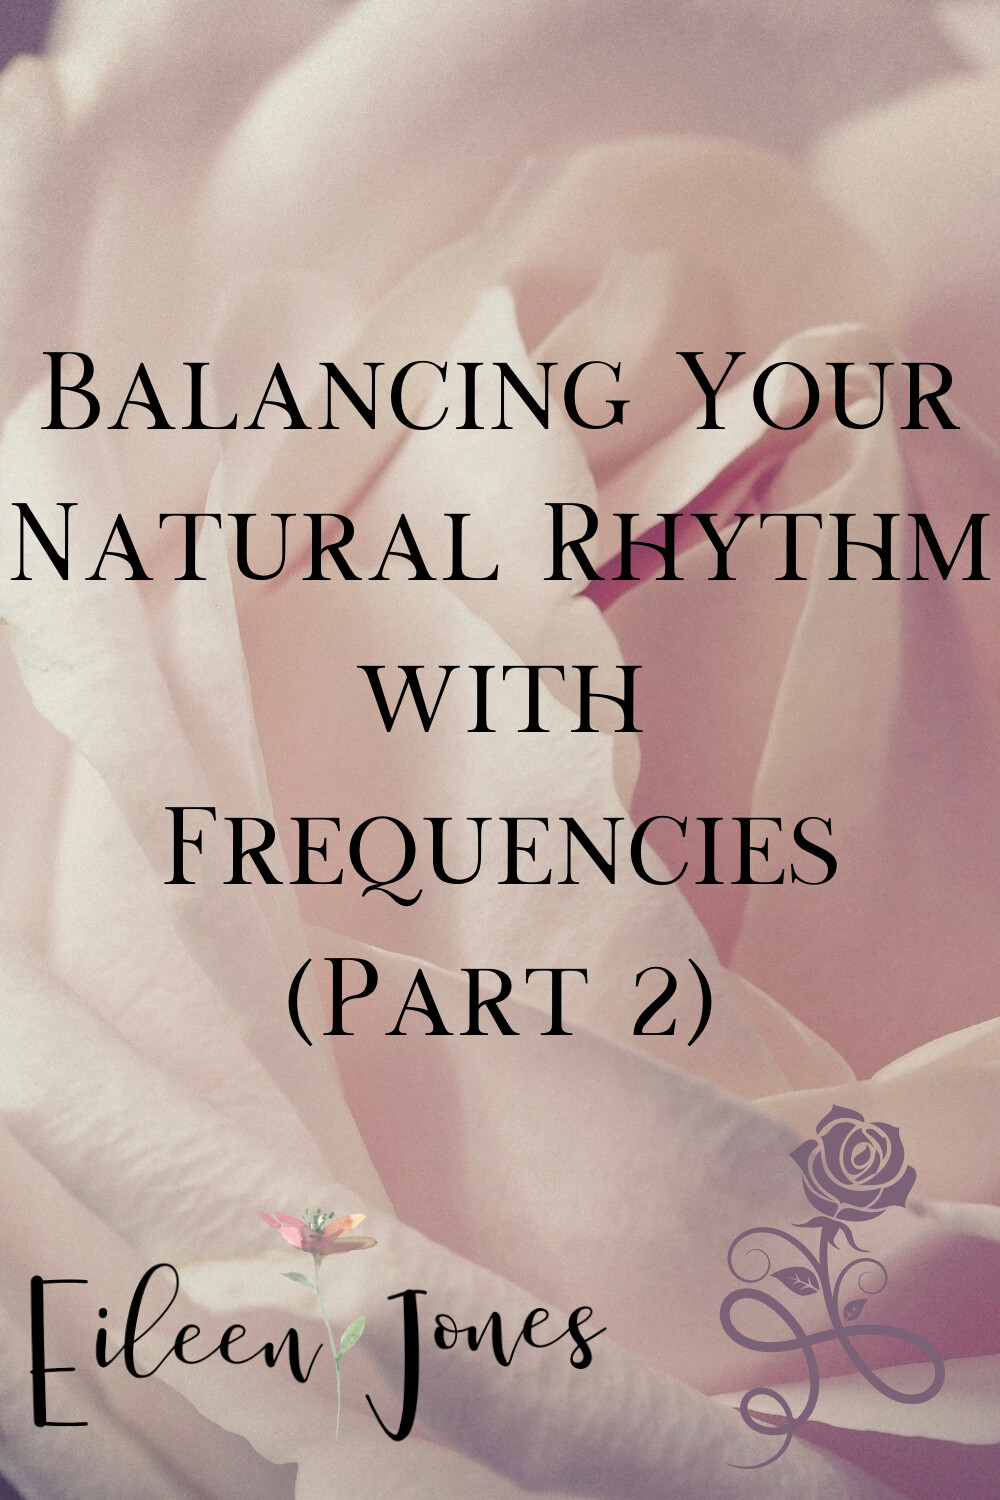 Balancing your Natural Rhythm Part 2